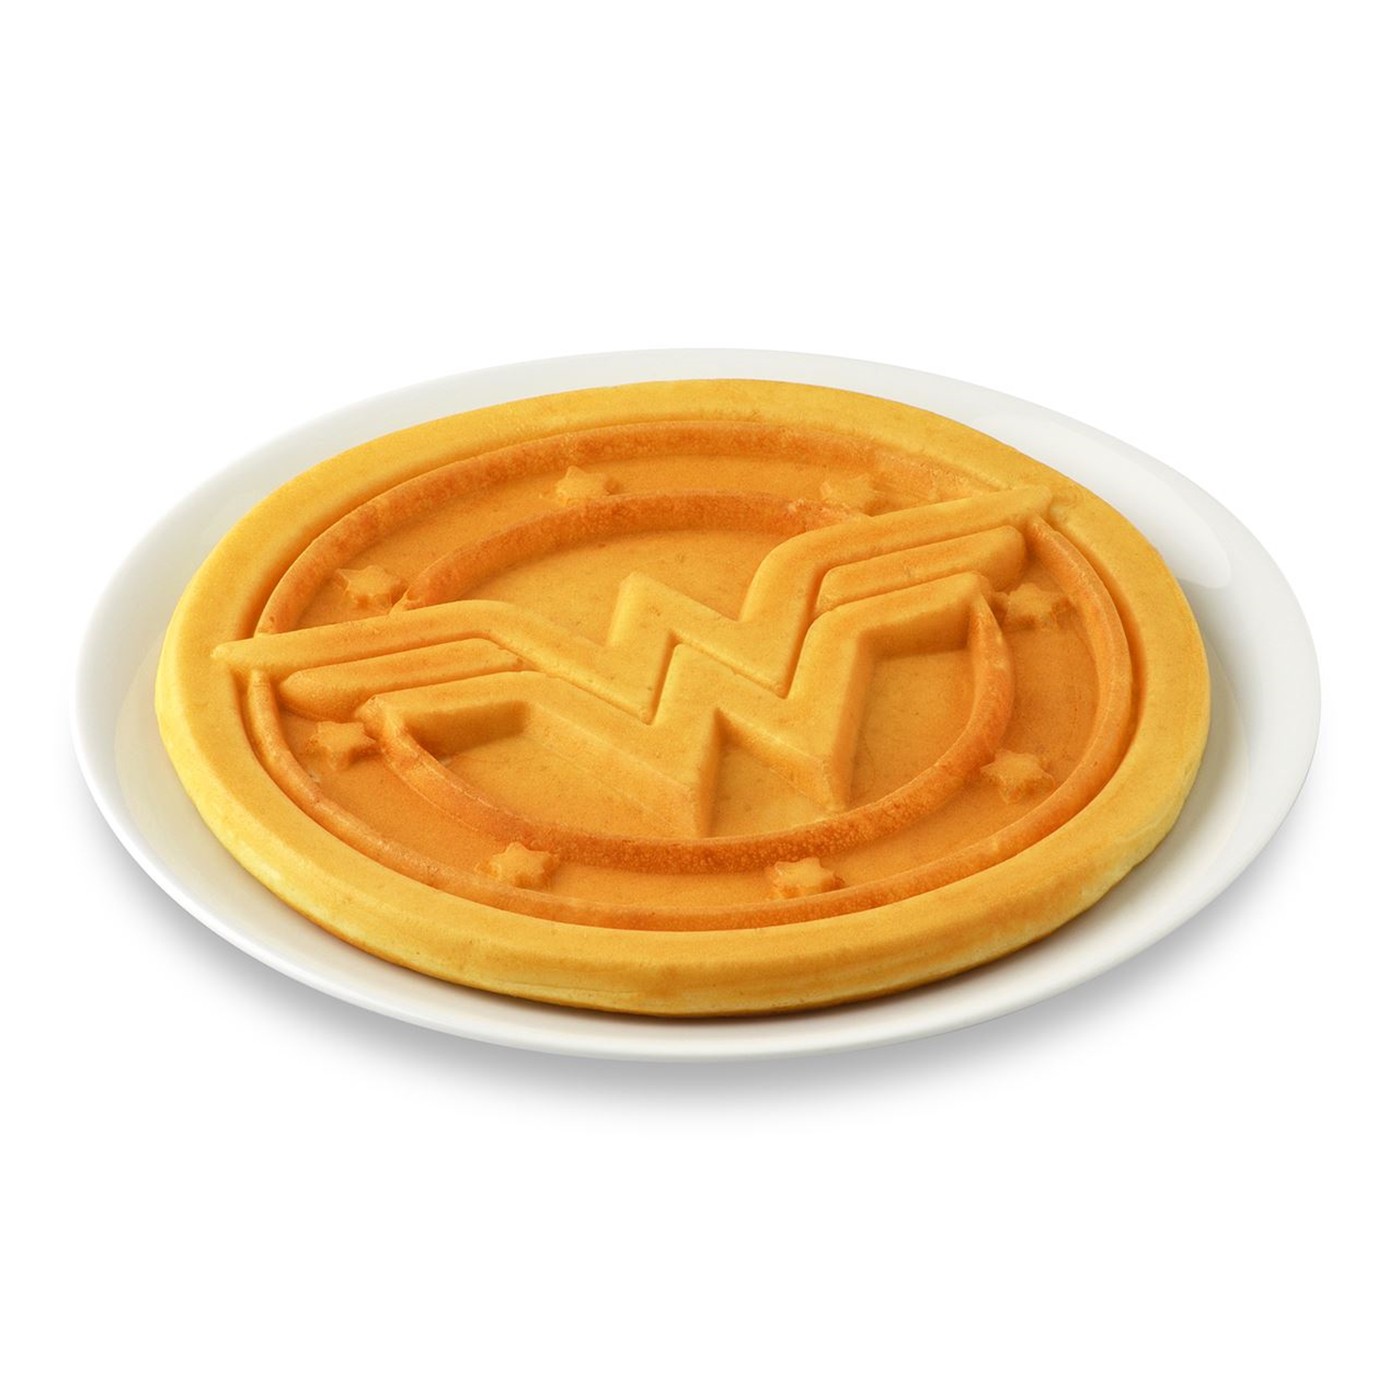 Wonder Woman Round Waffle Maker